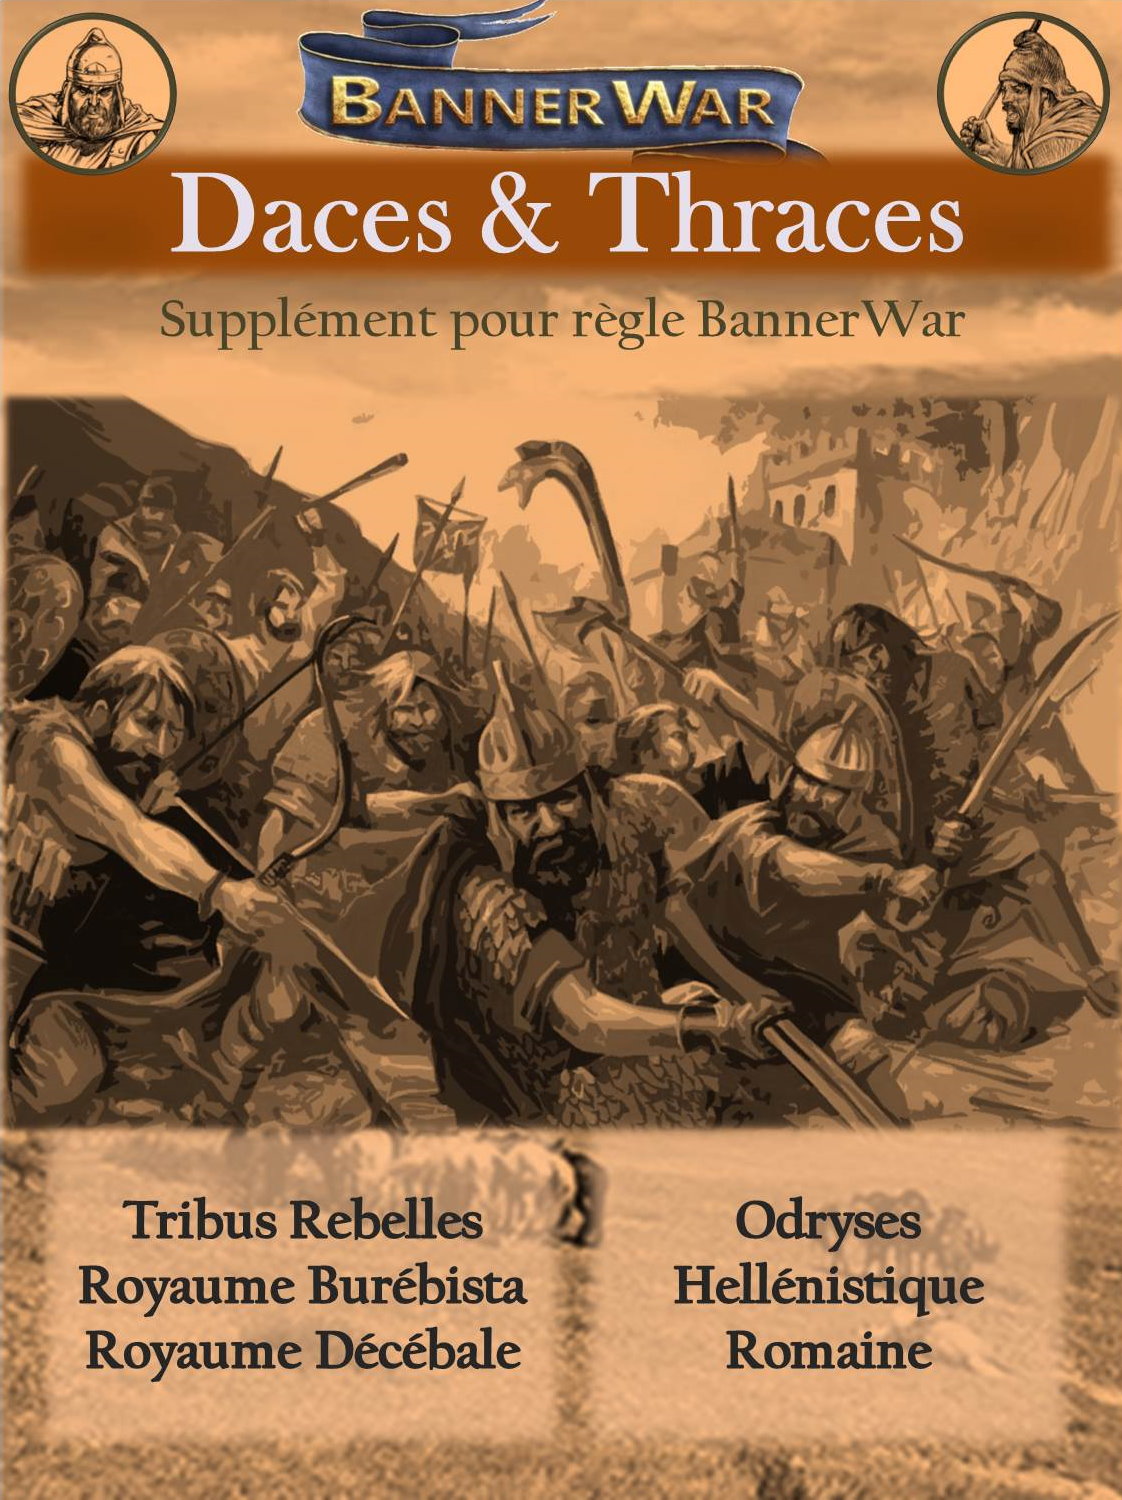 Armée dace et Thraces